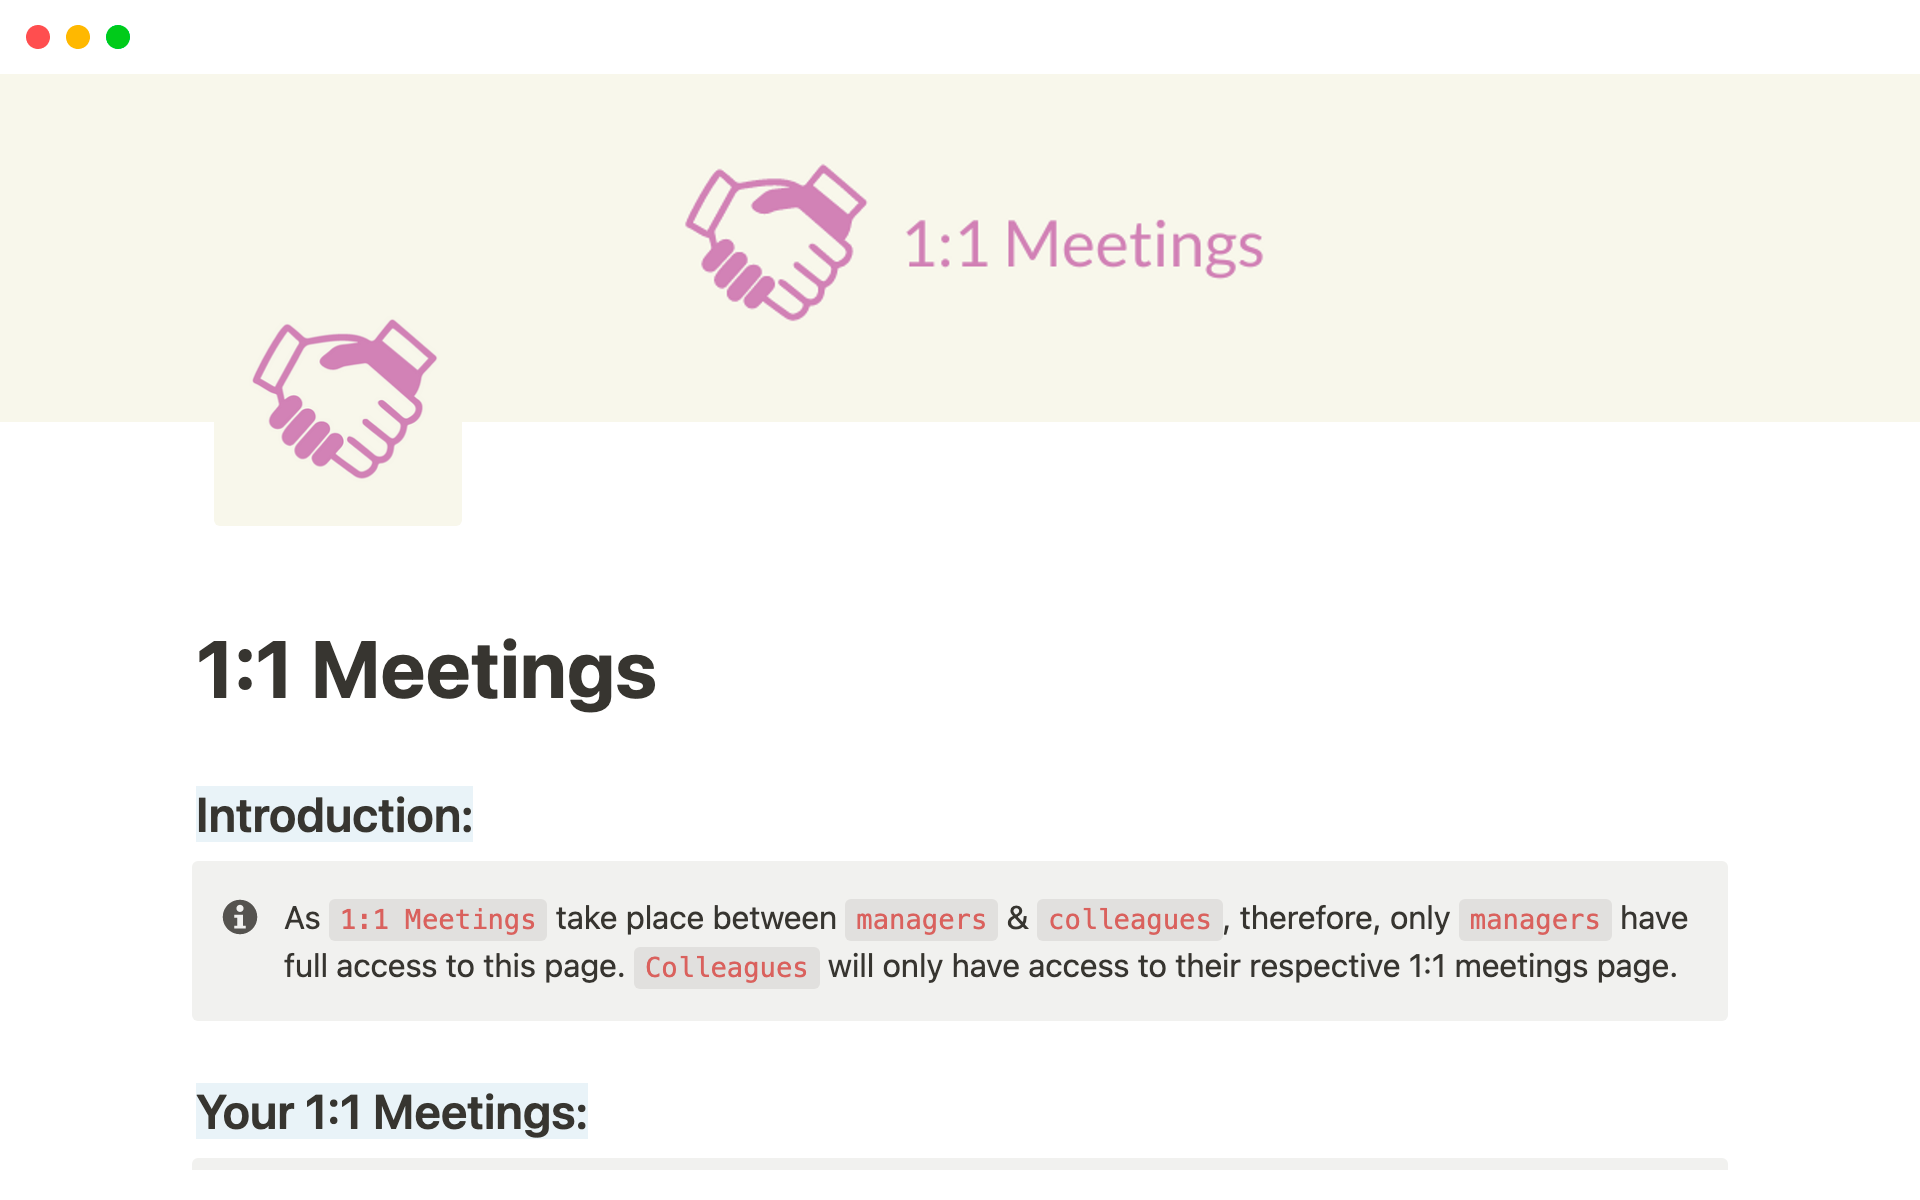 Uma prévia do modelo para 1:1 Meetings